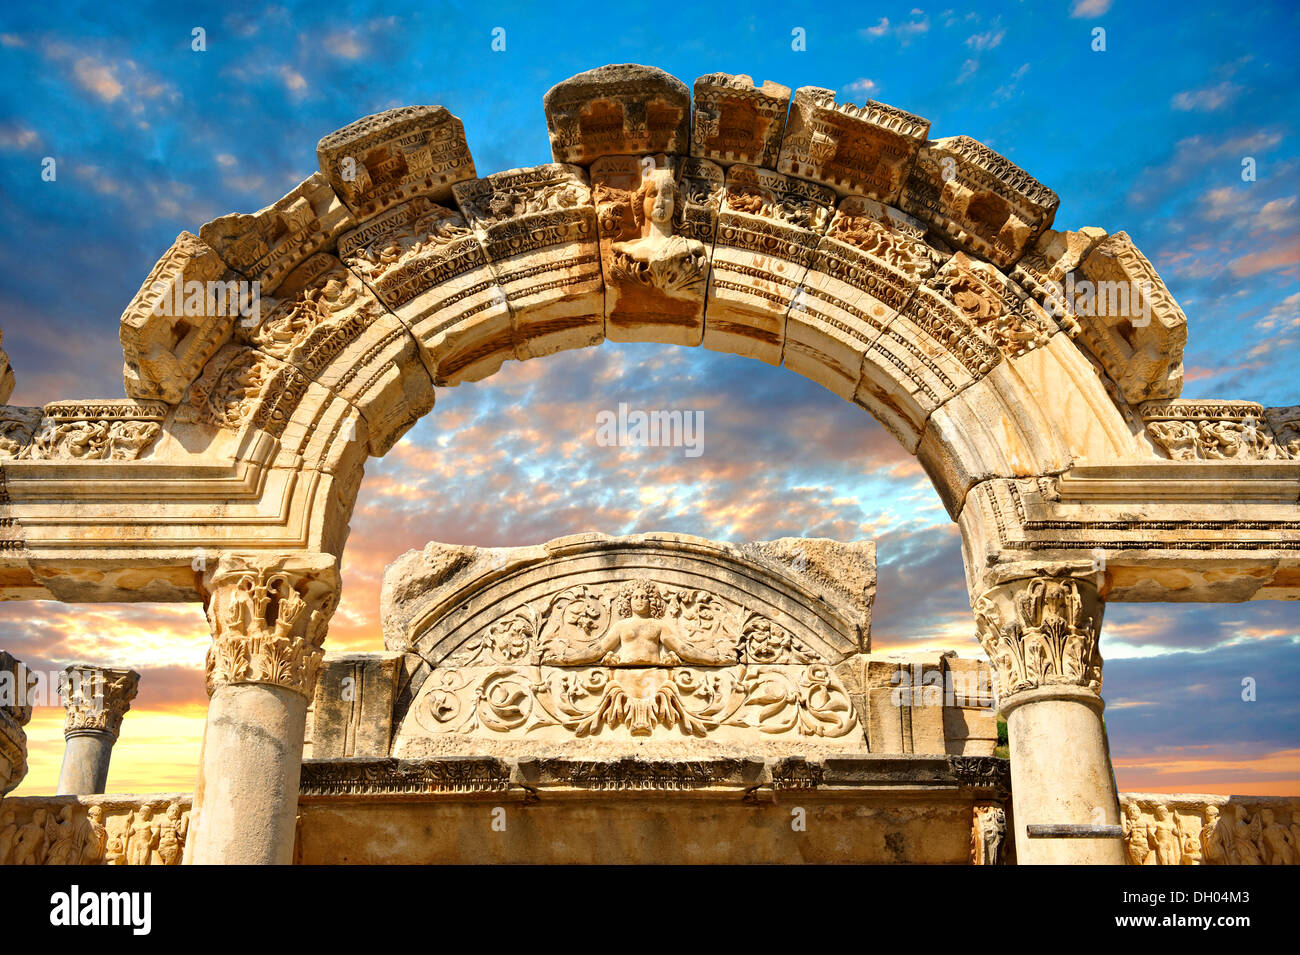 Le temple de l'empereur Hadrien sur curetes street, 117 - 138 a.d., site archéologique d'Éphèse, Anatolie, Turquie Banque D'Images